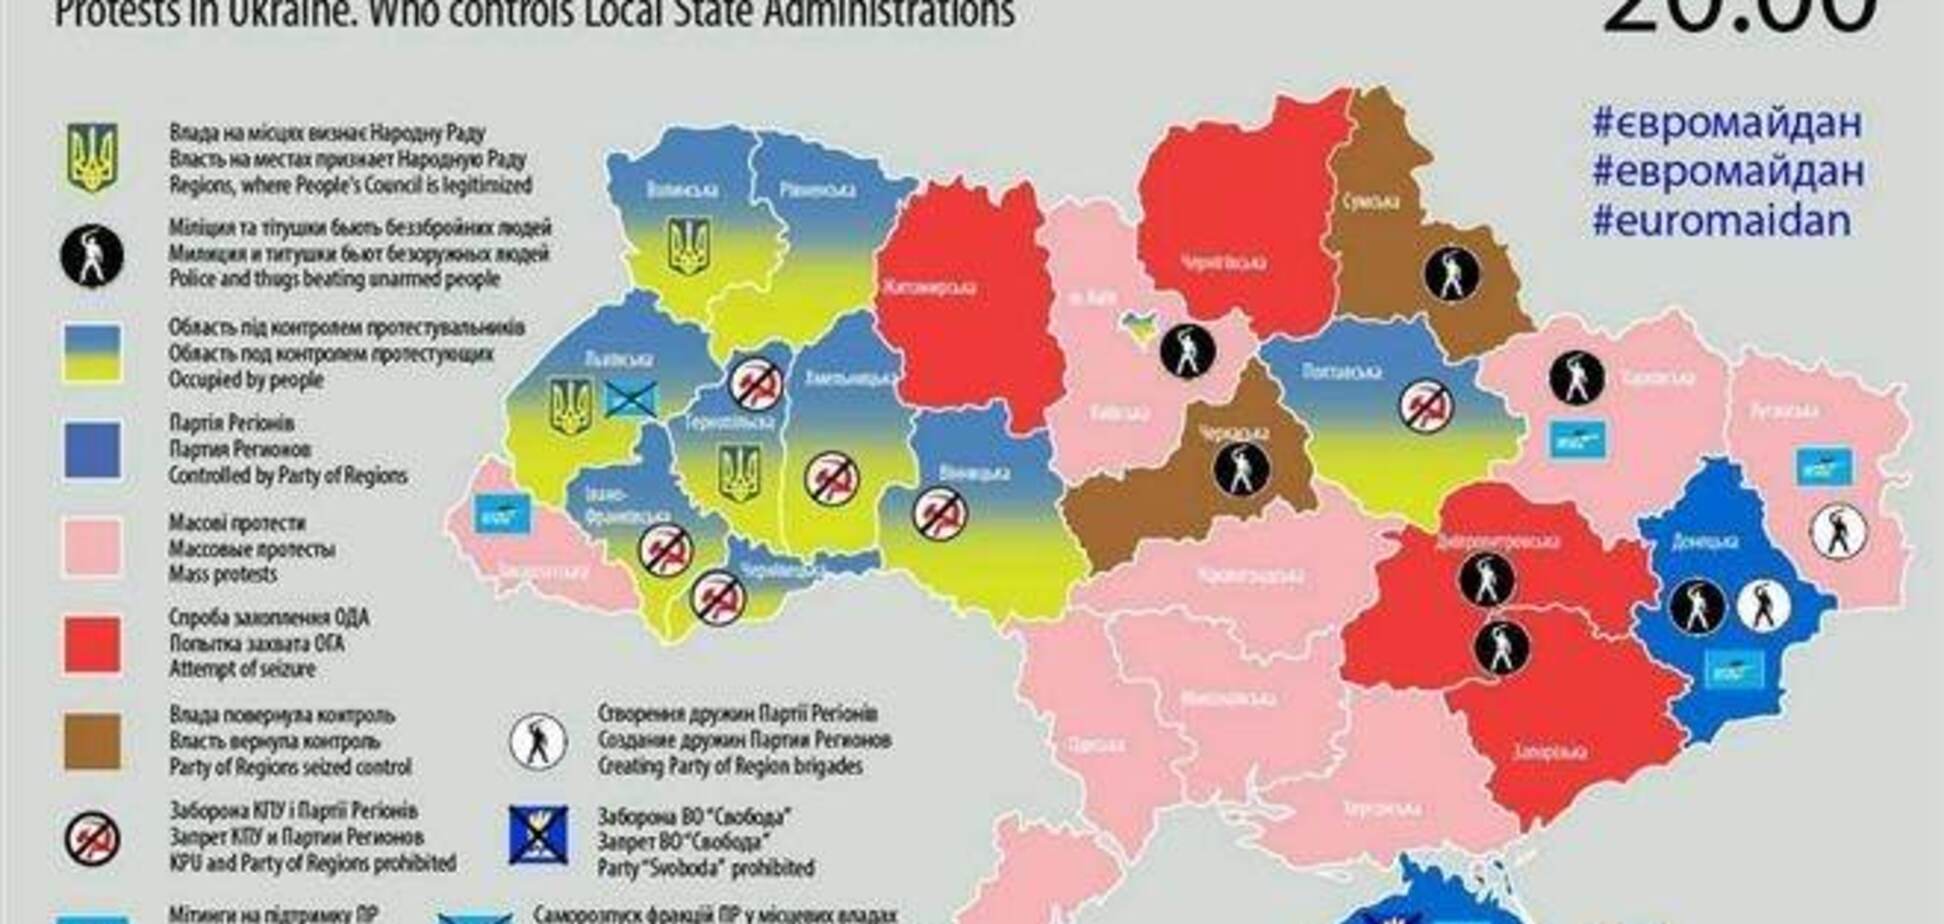 Оновлена ??карта протестів по Україні: захоплено дев'ять ОДА